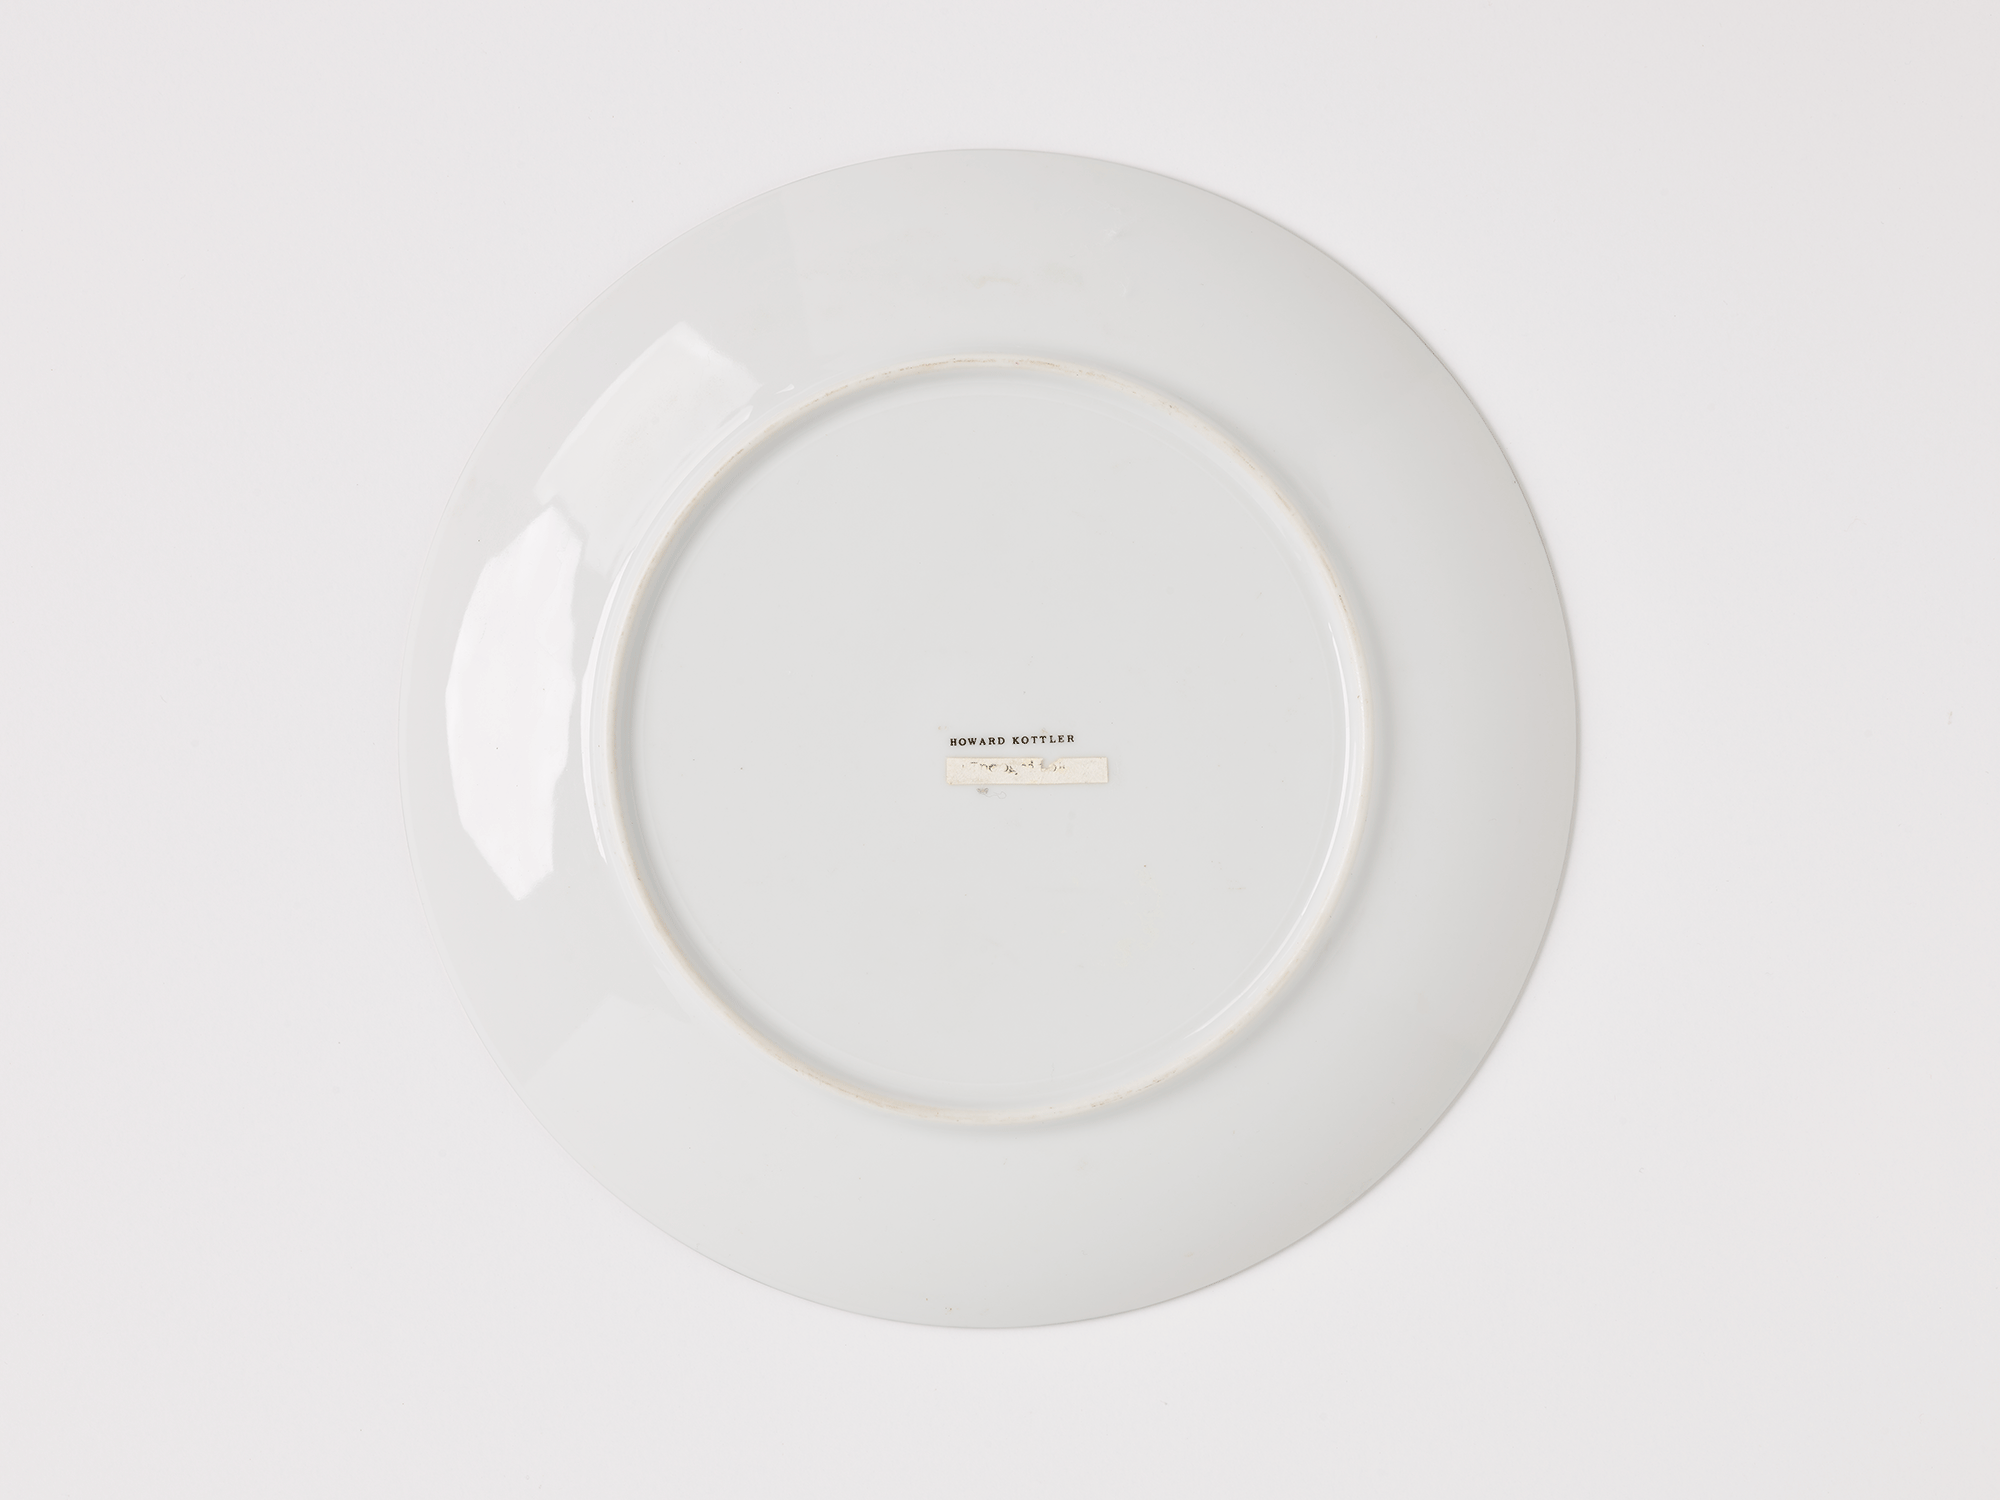 Underside of plate. Name printed in the center reads “Howard Kottler.”